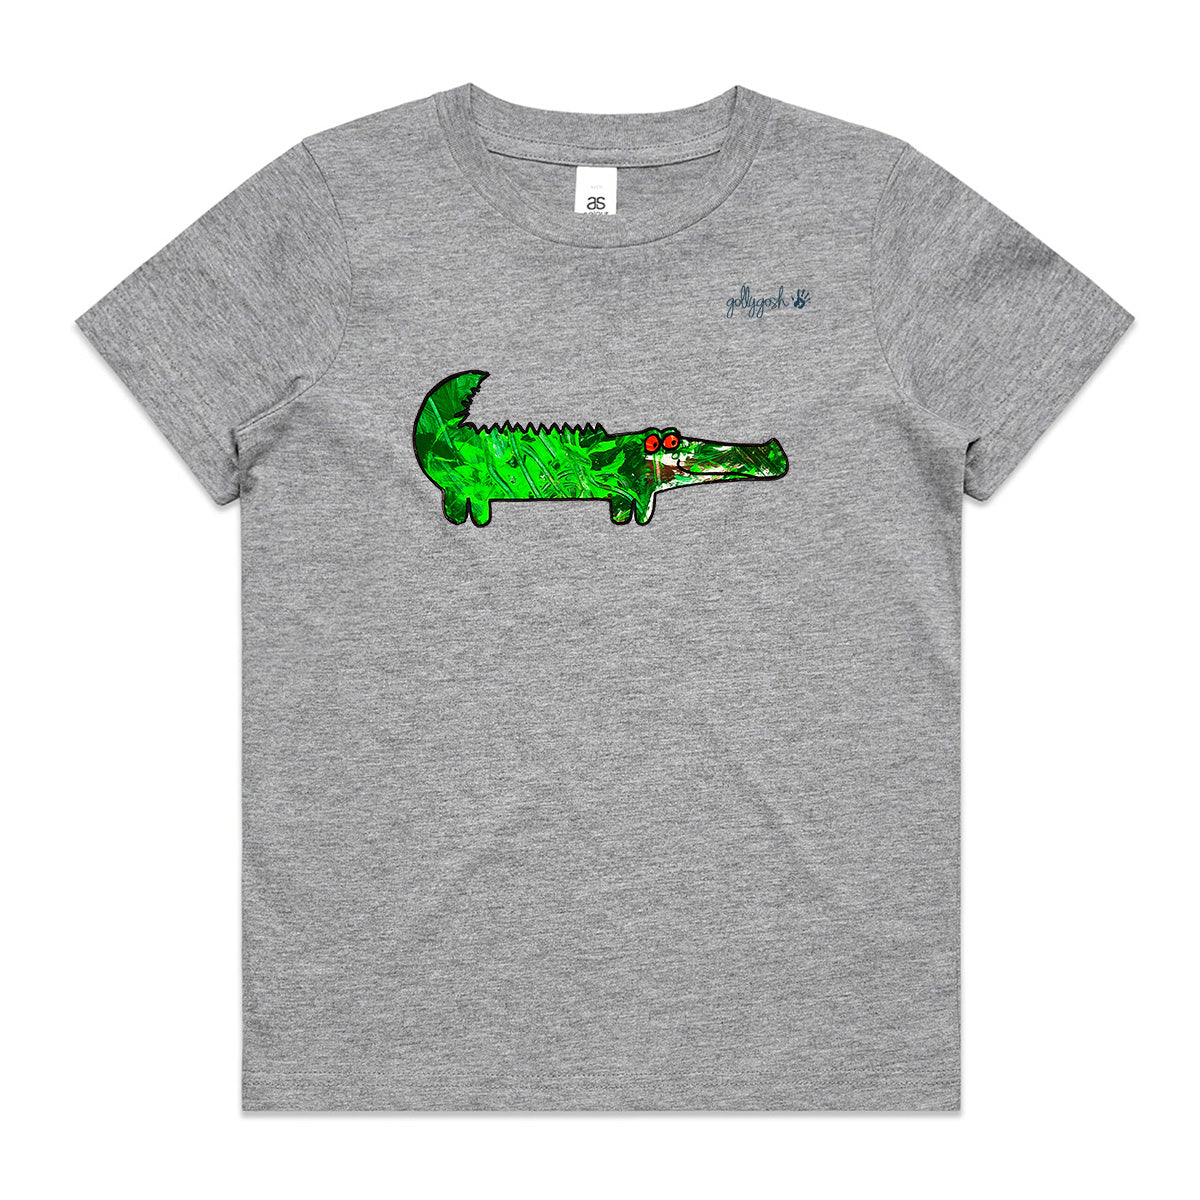 Alligator - Kids Tee